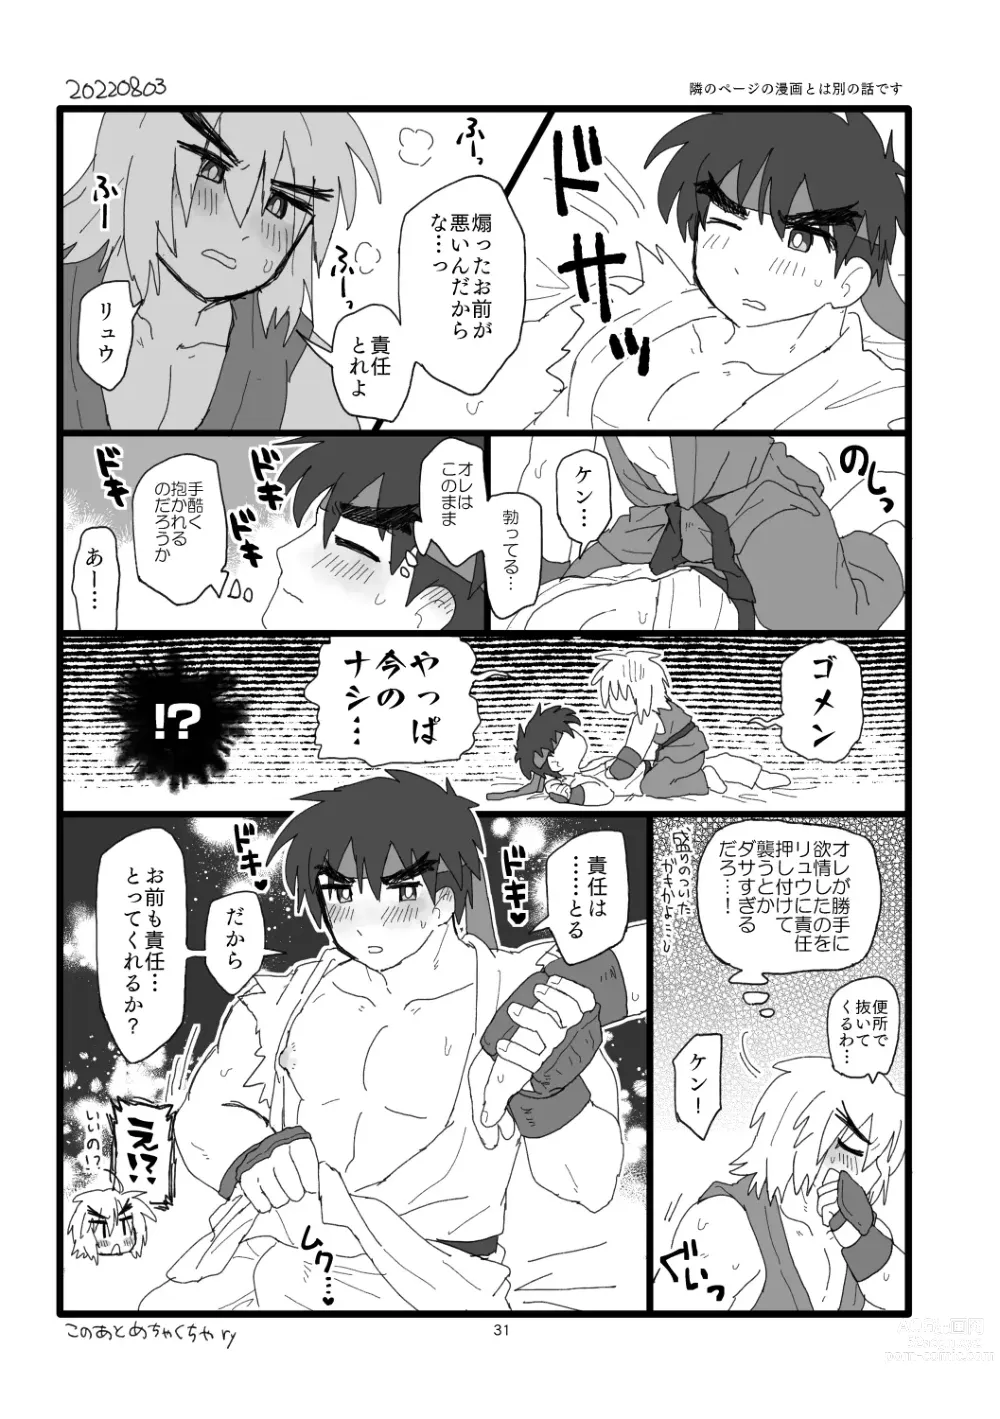 Page 30 of doujinshi Kobushi Kiss